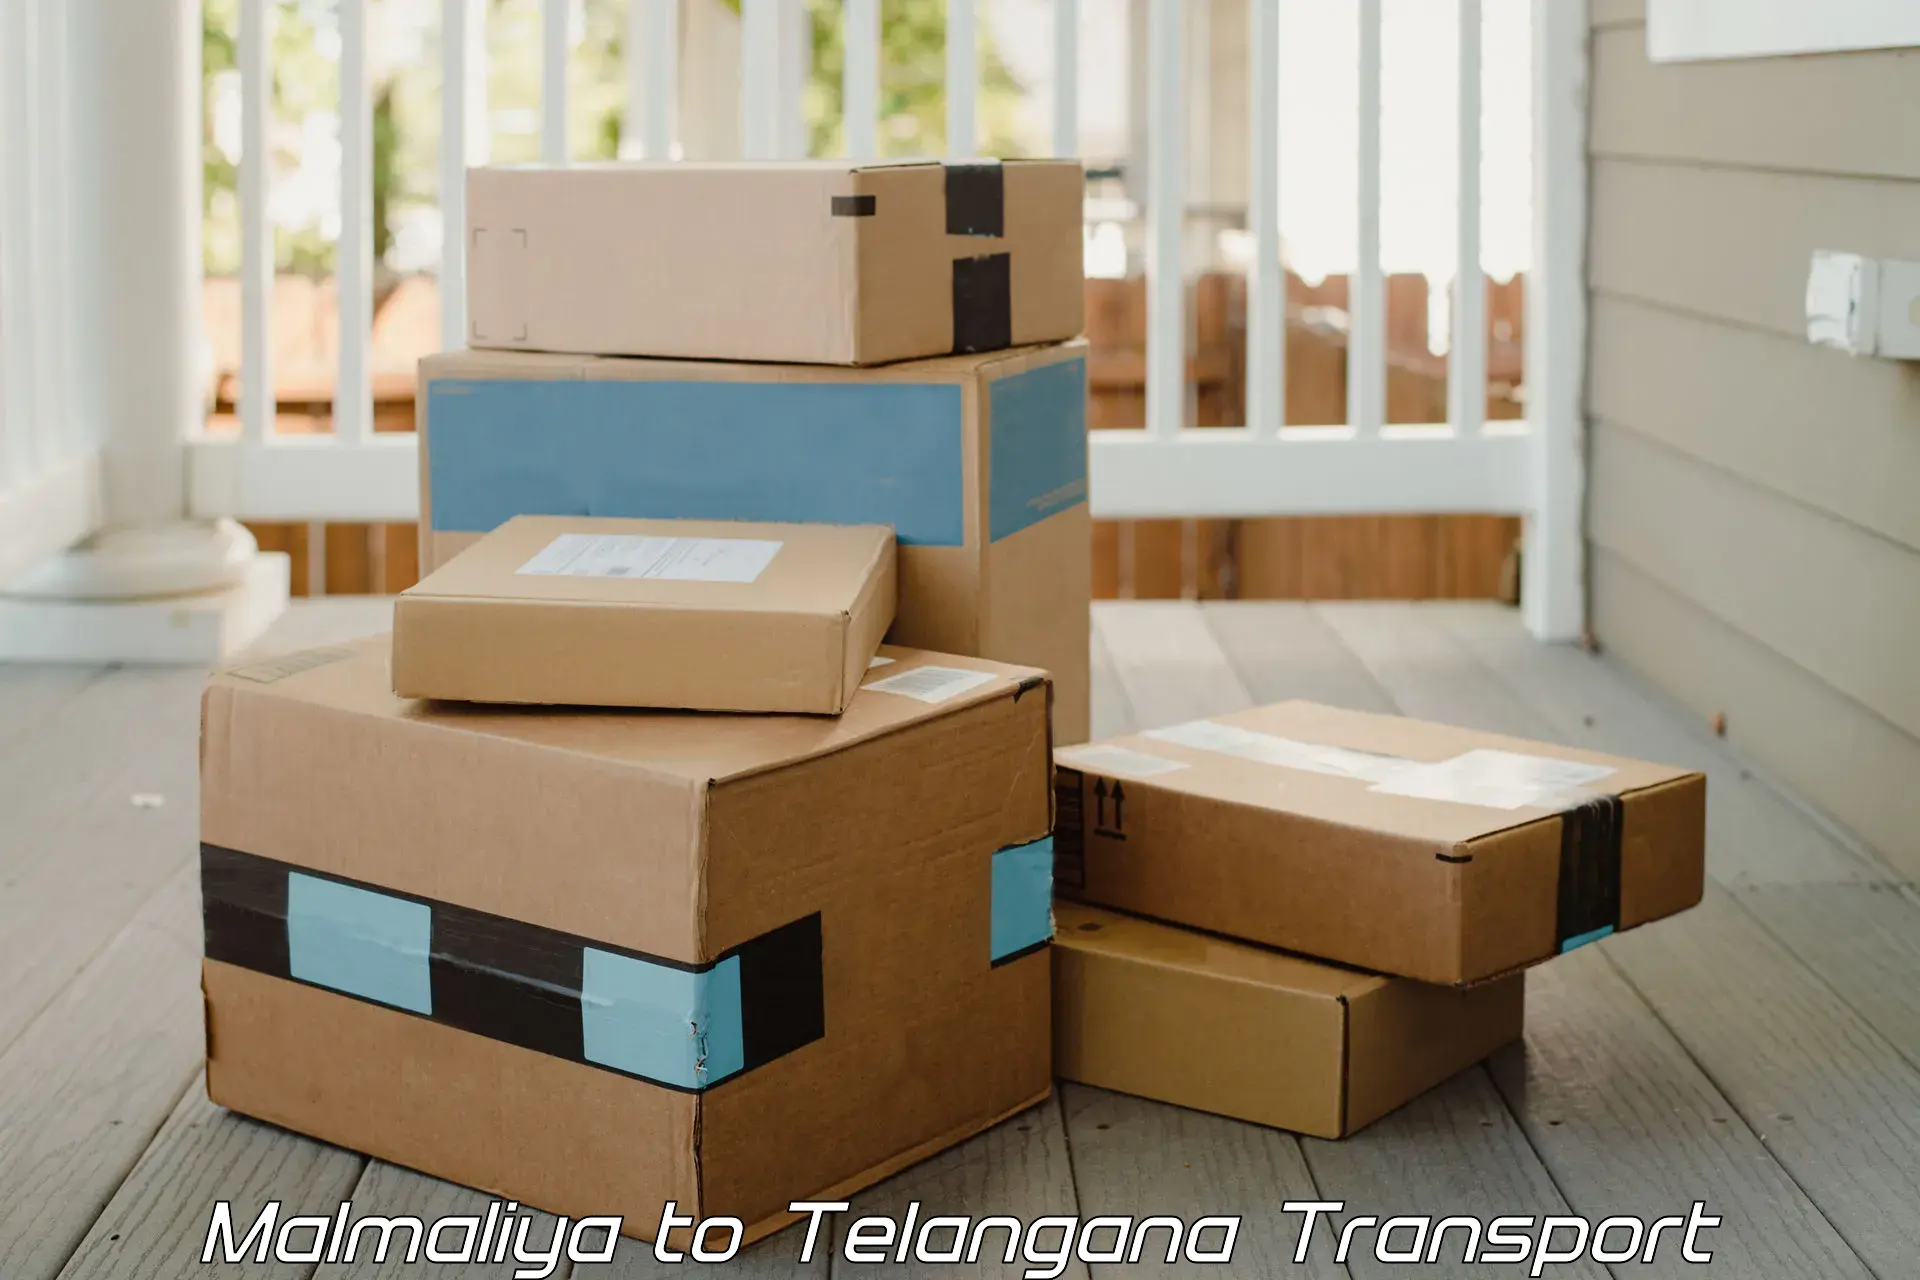 Goods delivery service Malmaliya to Mudigonda